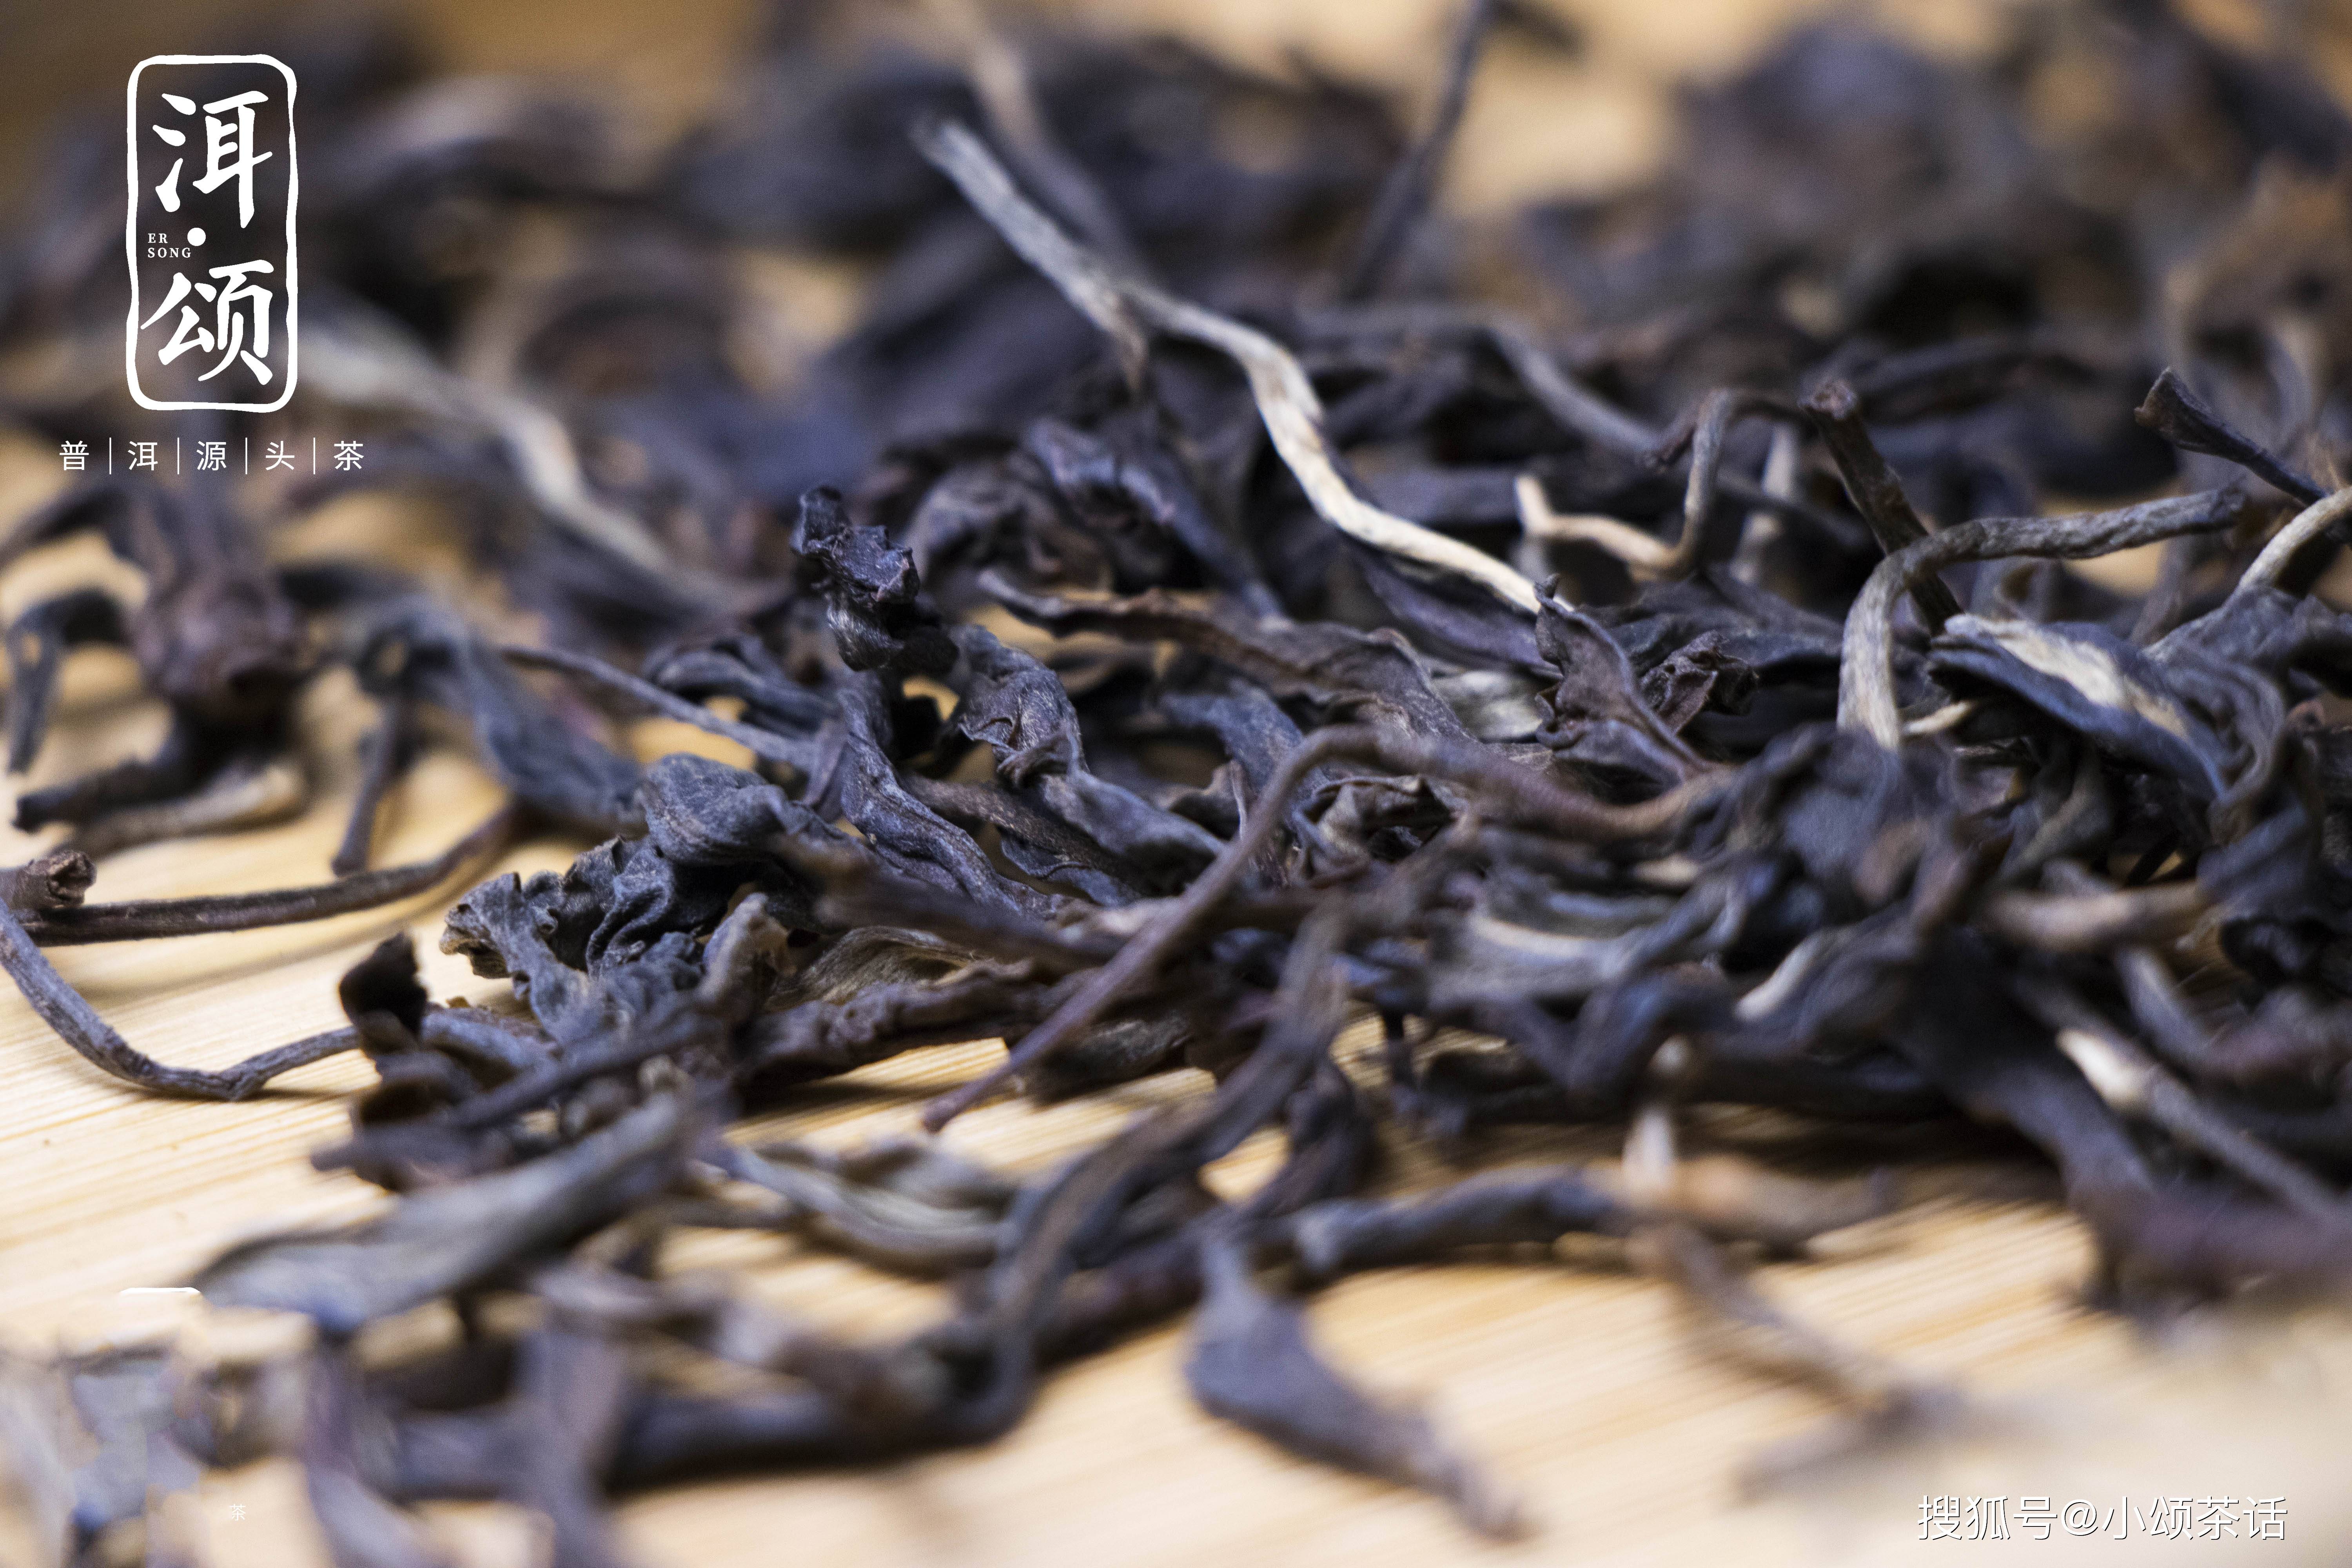 原来茶毫对于普洱茶的品质有这么大的影响!跟着洱颂来看看吧!